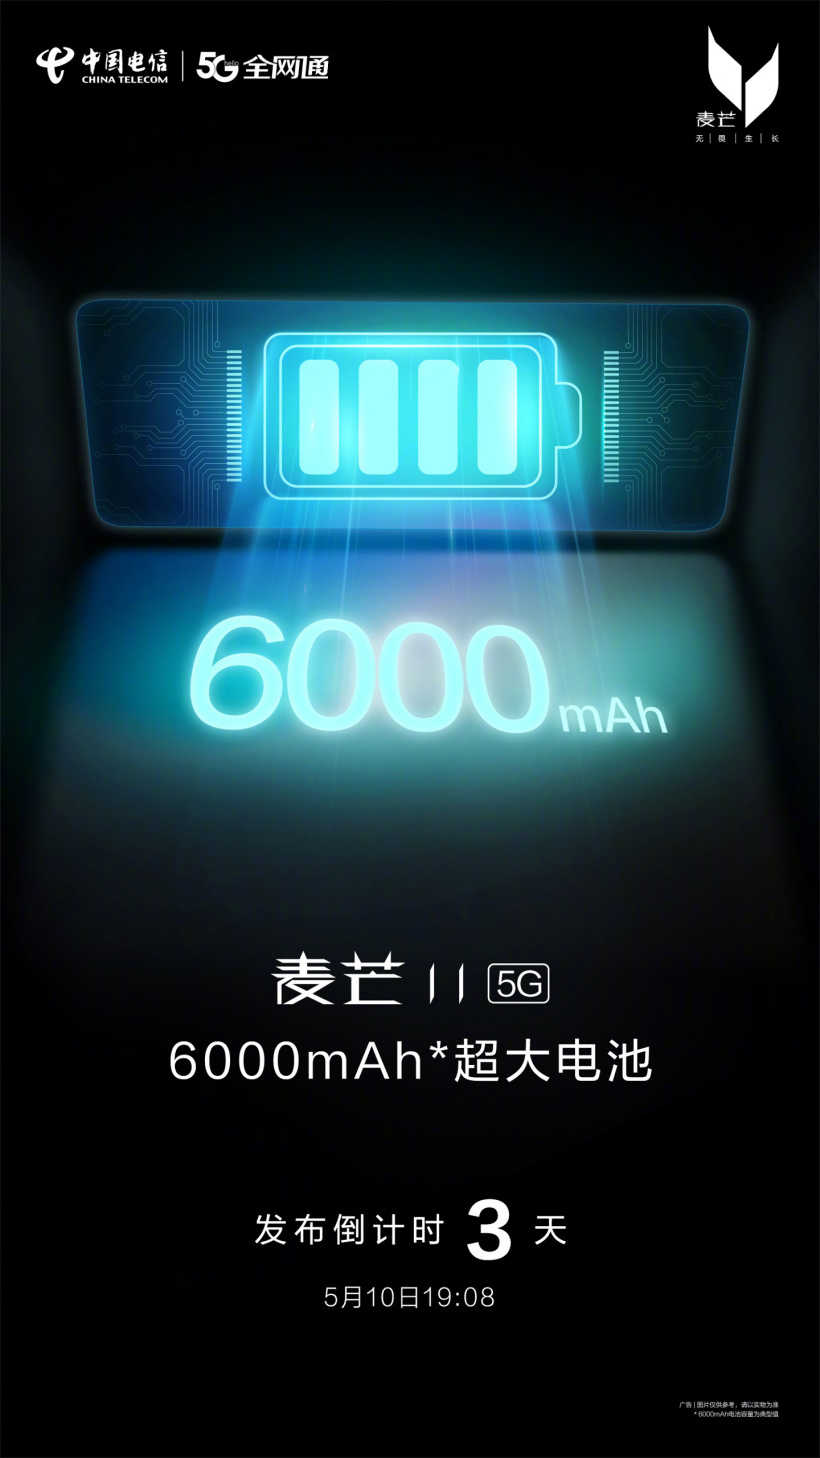 中国电信麦芒11最新手机配置-手机配置详解